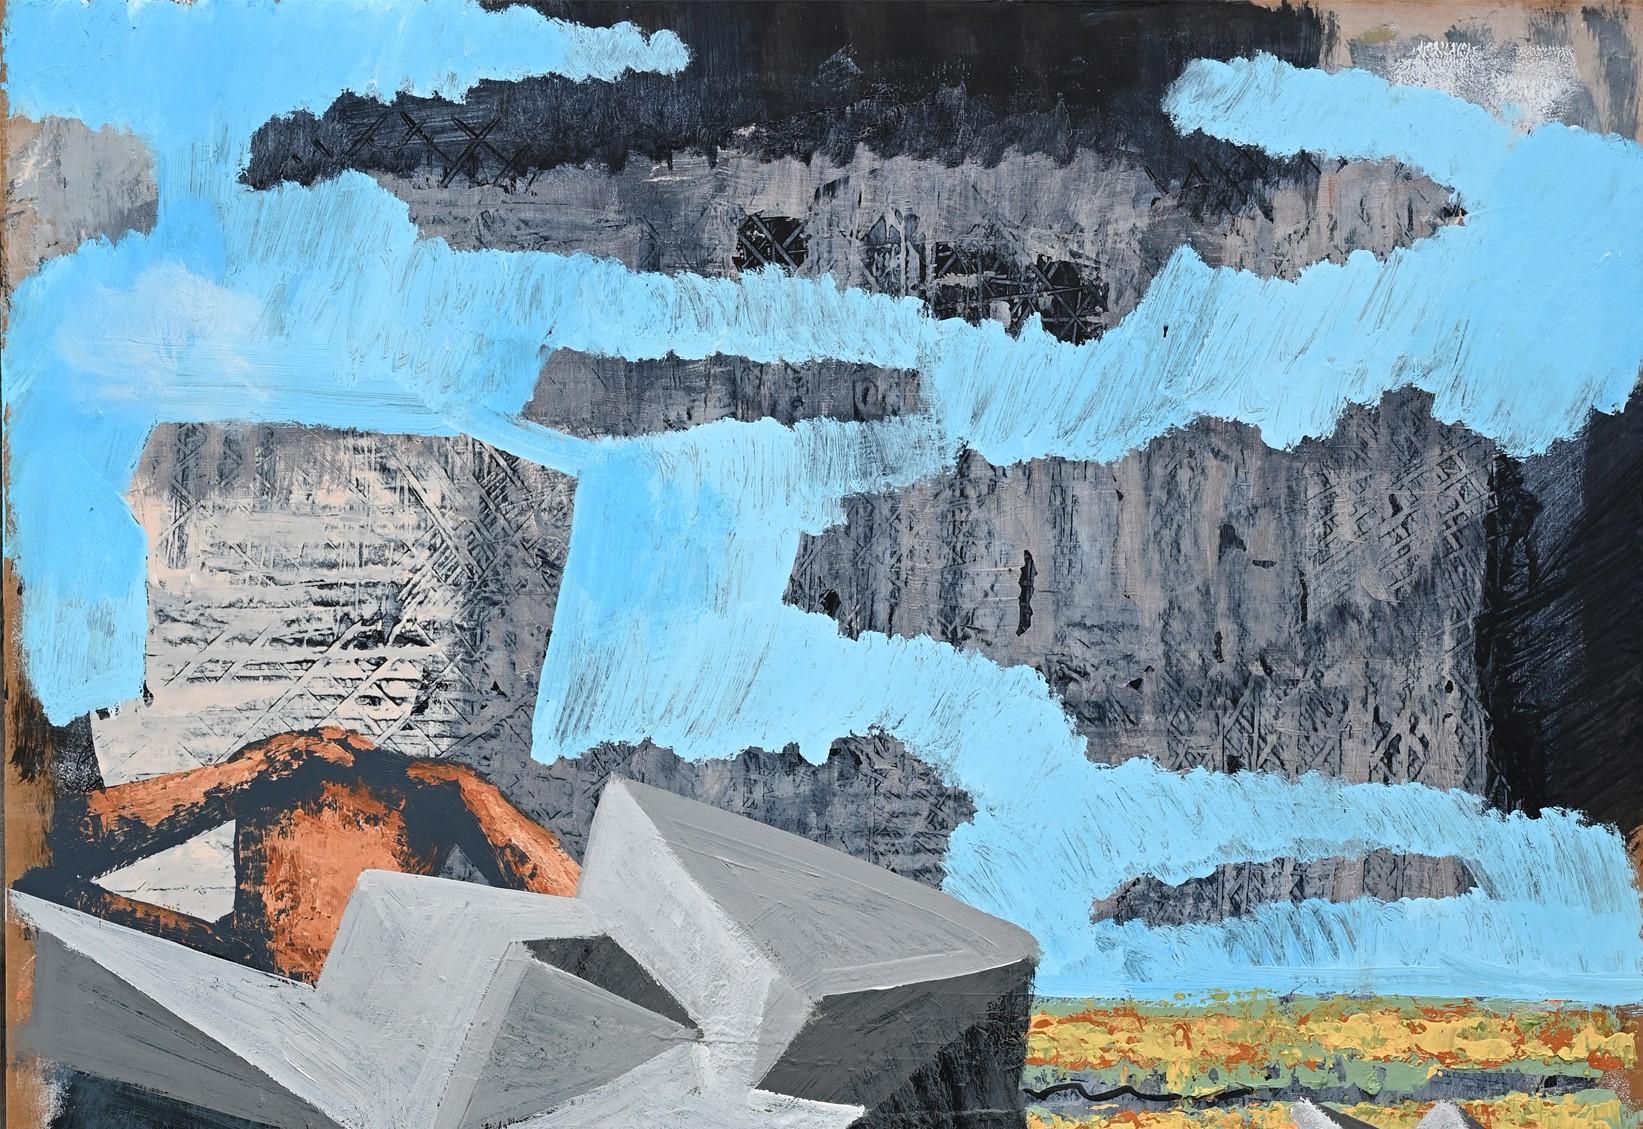 After the Rain - 21st Contemporary Art, Landscape, Black, Blue - Painting by Alexandru Rădvan